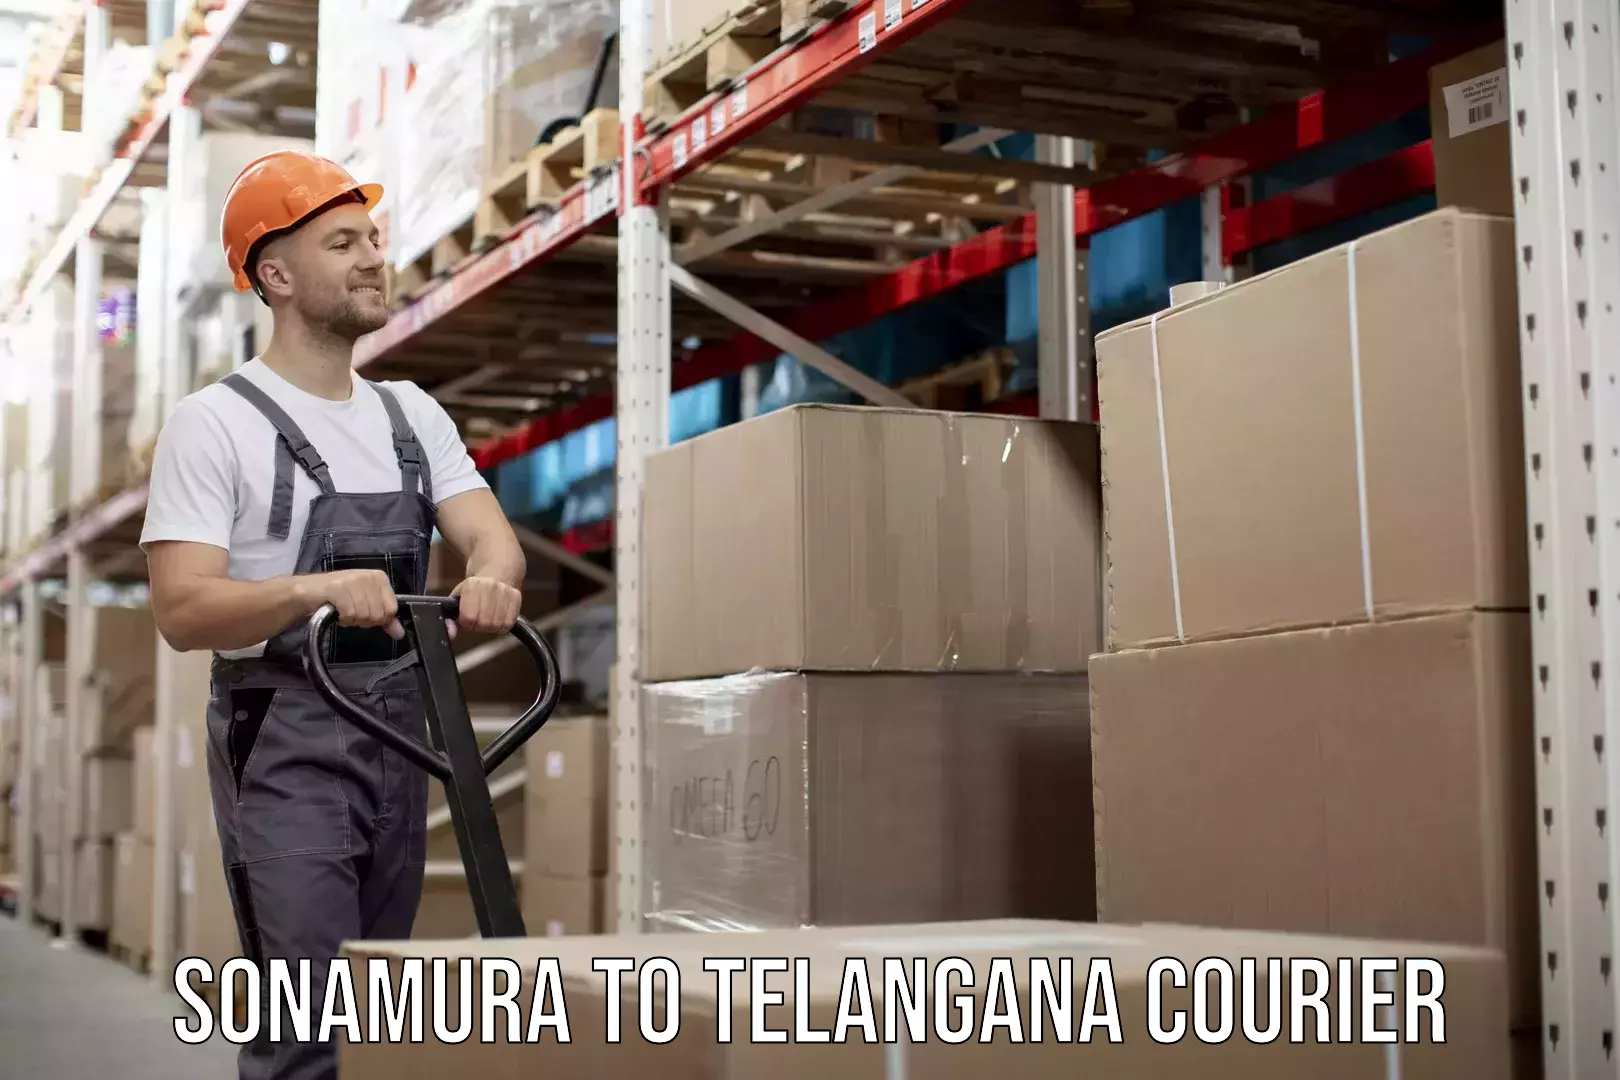 Premium courier solutions Sonamura to Telangana